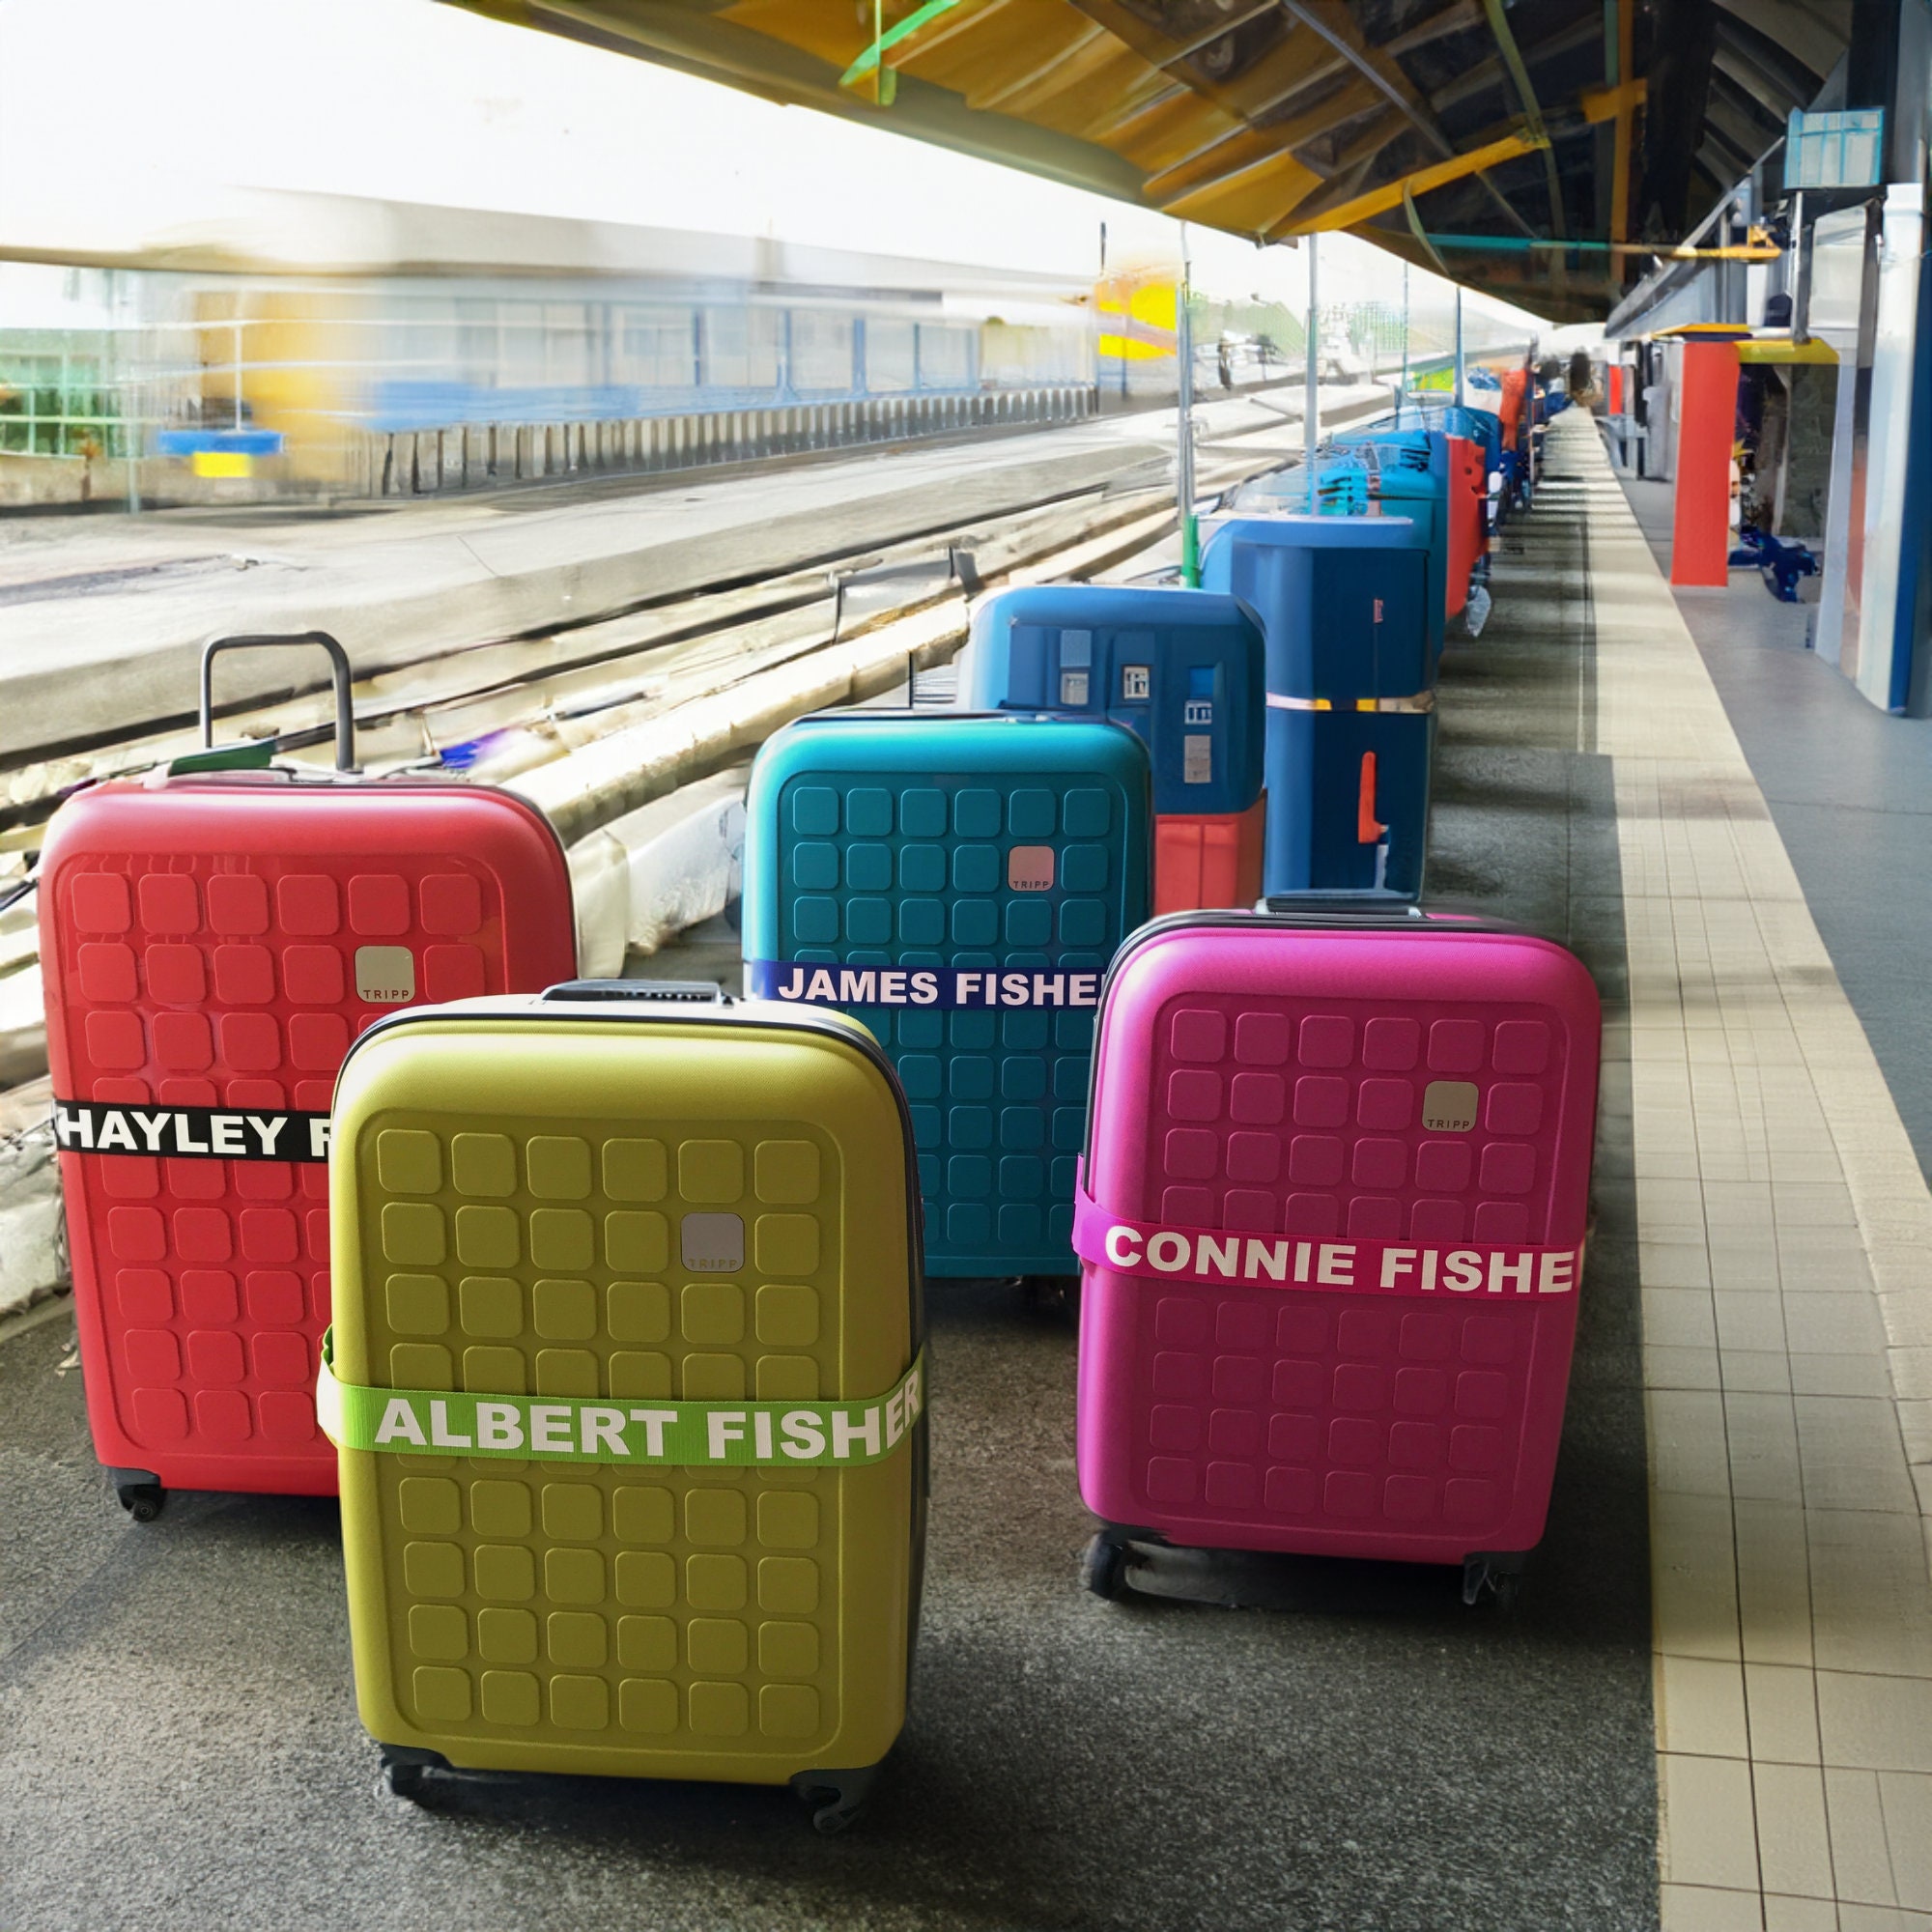 Old Sport Multicolor Shoulder Bag Hard Shell Mini Suitcase Design